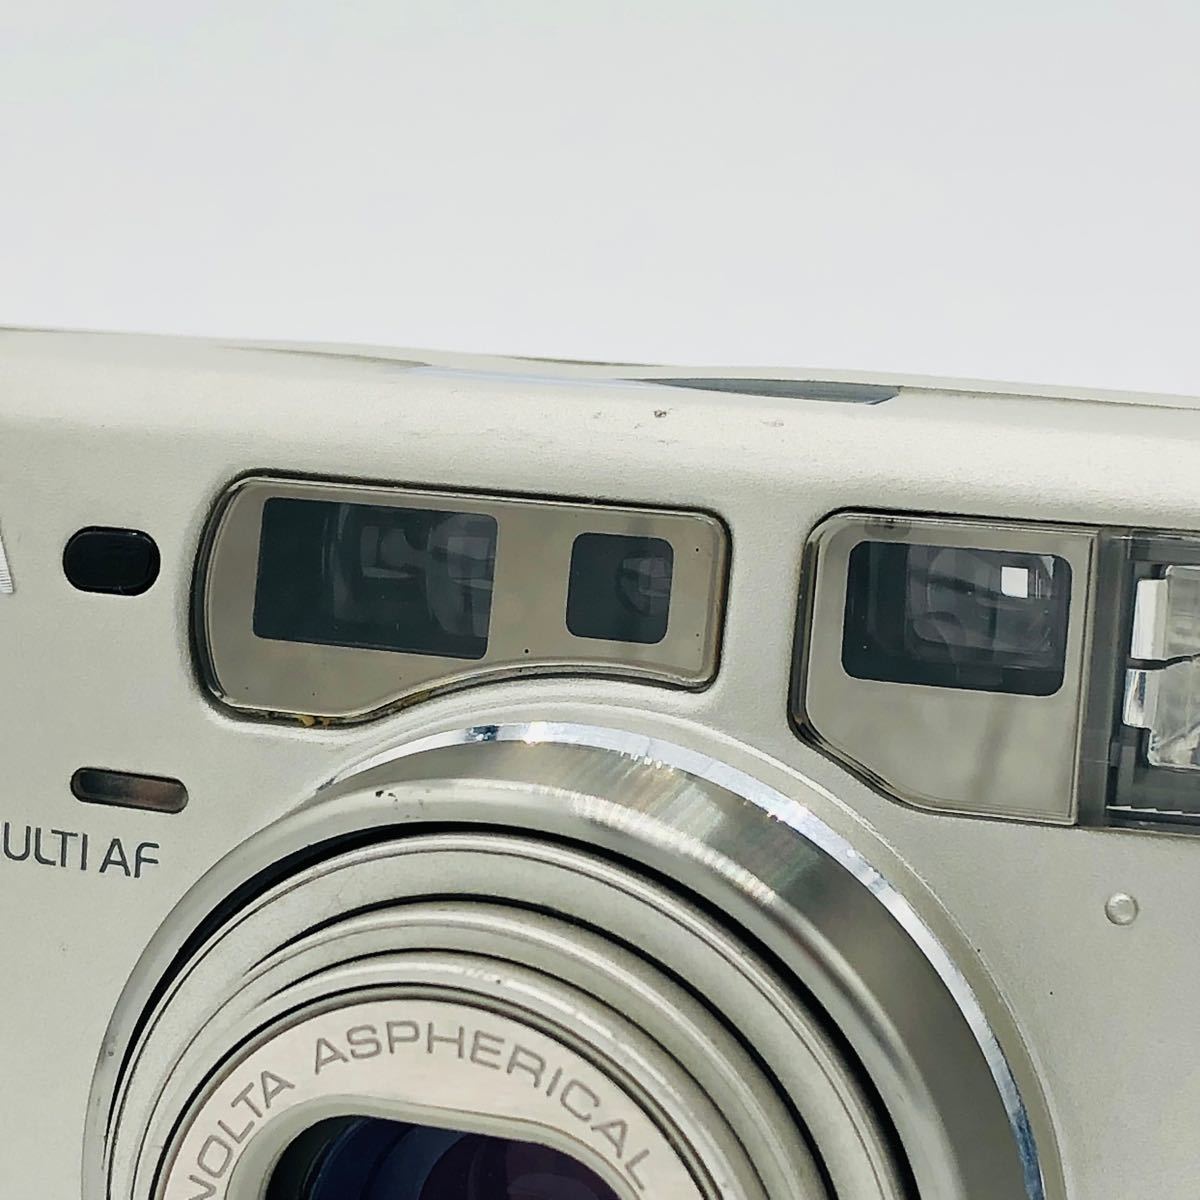 カメラ フィルムカメラ 【完動品】 MINOLTA Capios 150 S コンパクトフィルムカメラ